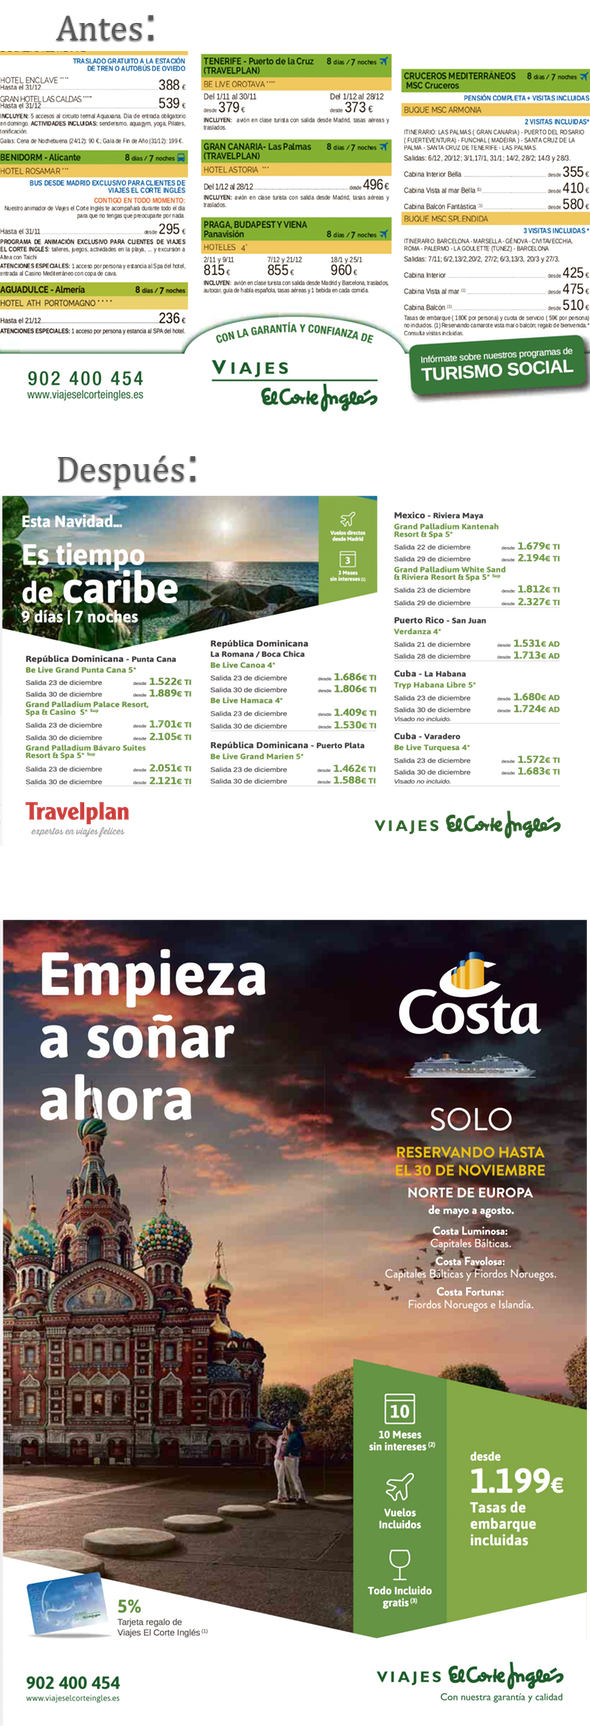 FOTONOTICIA: Viajes El Corte Inglés moderniza la estética de sus anuncios | Noticias de Agencias de viajes, rss2 | Revista de Preferente.com